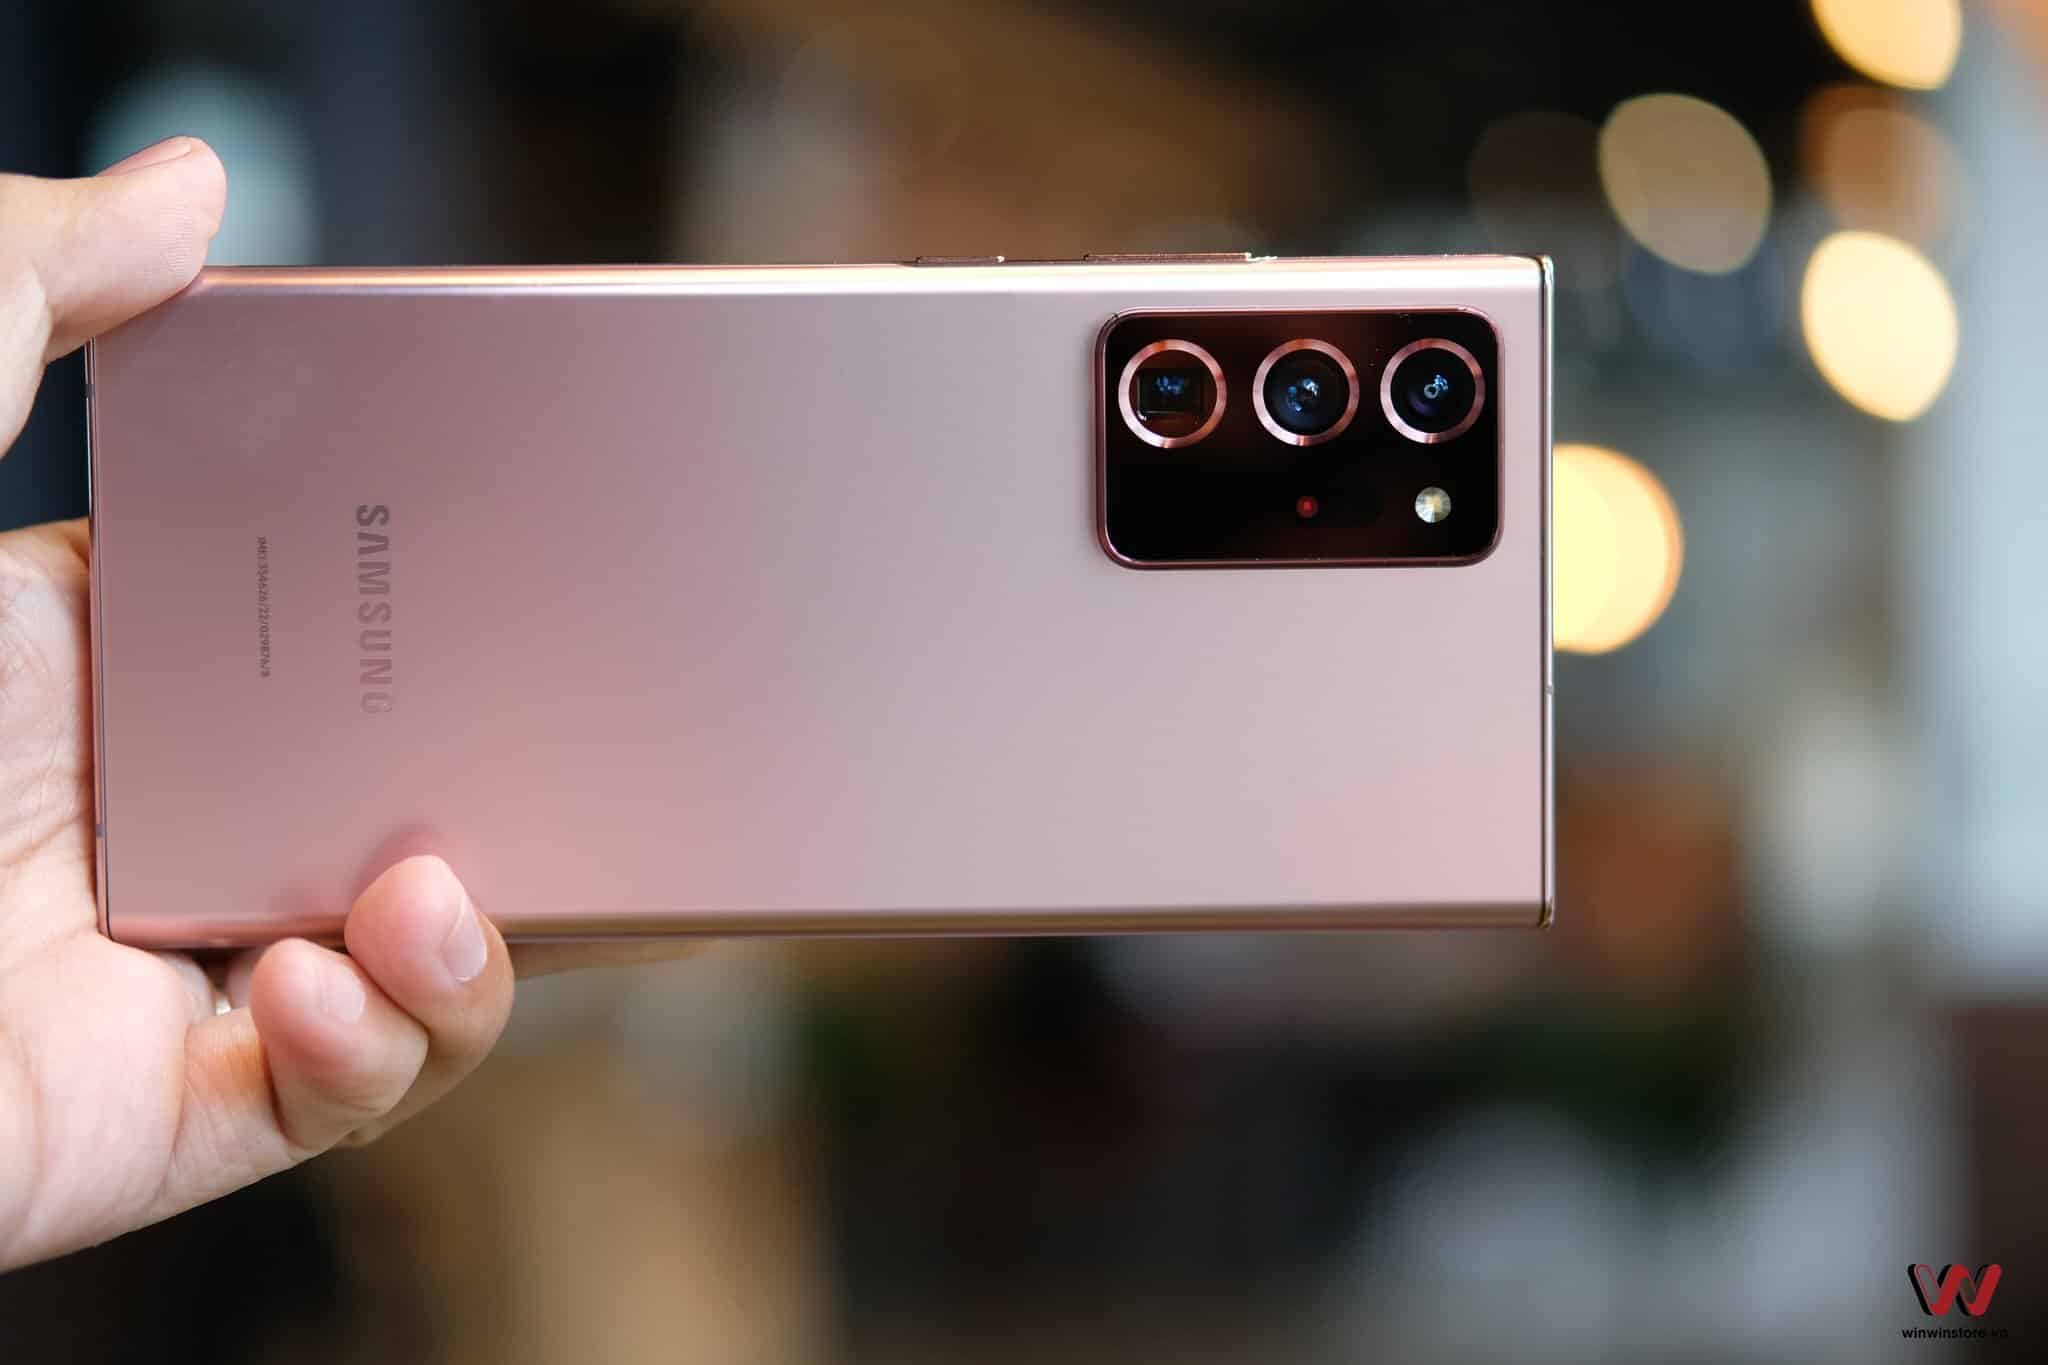 Samsung đang nghiên cứu cách xoá điểm ảnh xấu, tăng chất lượng ảnh trên smartphone